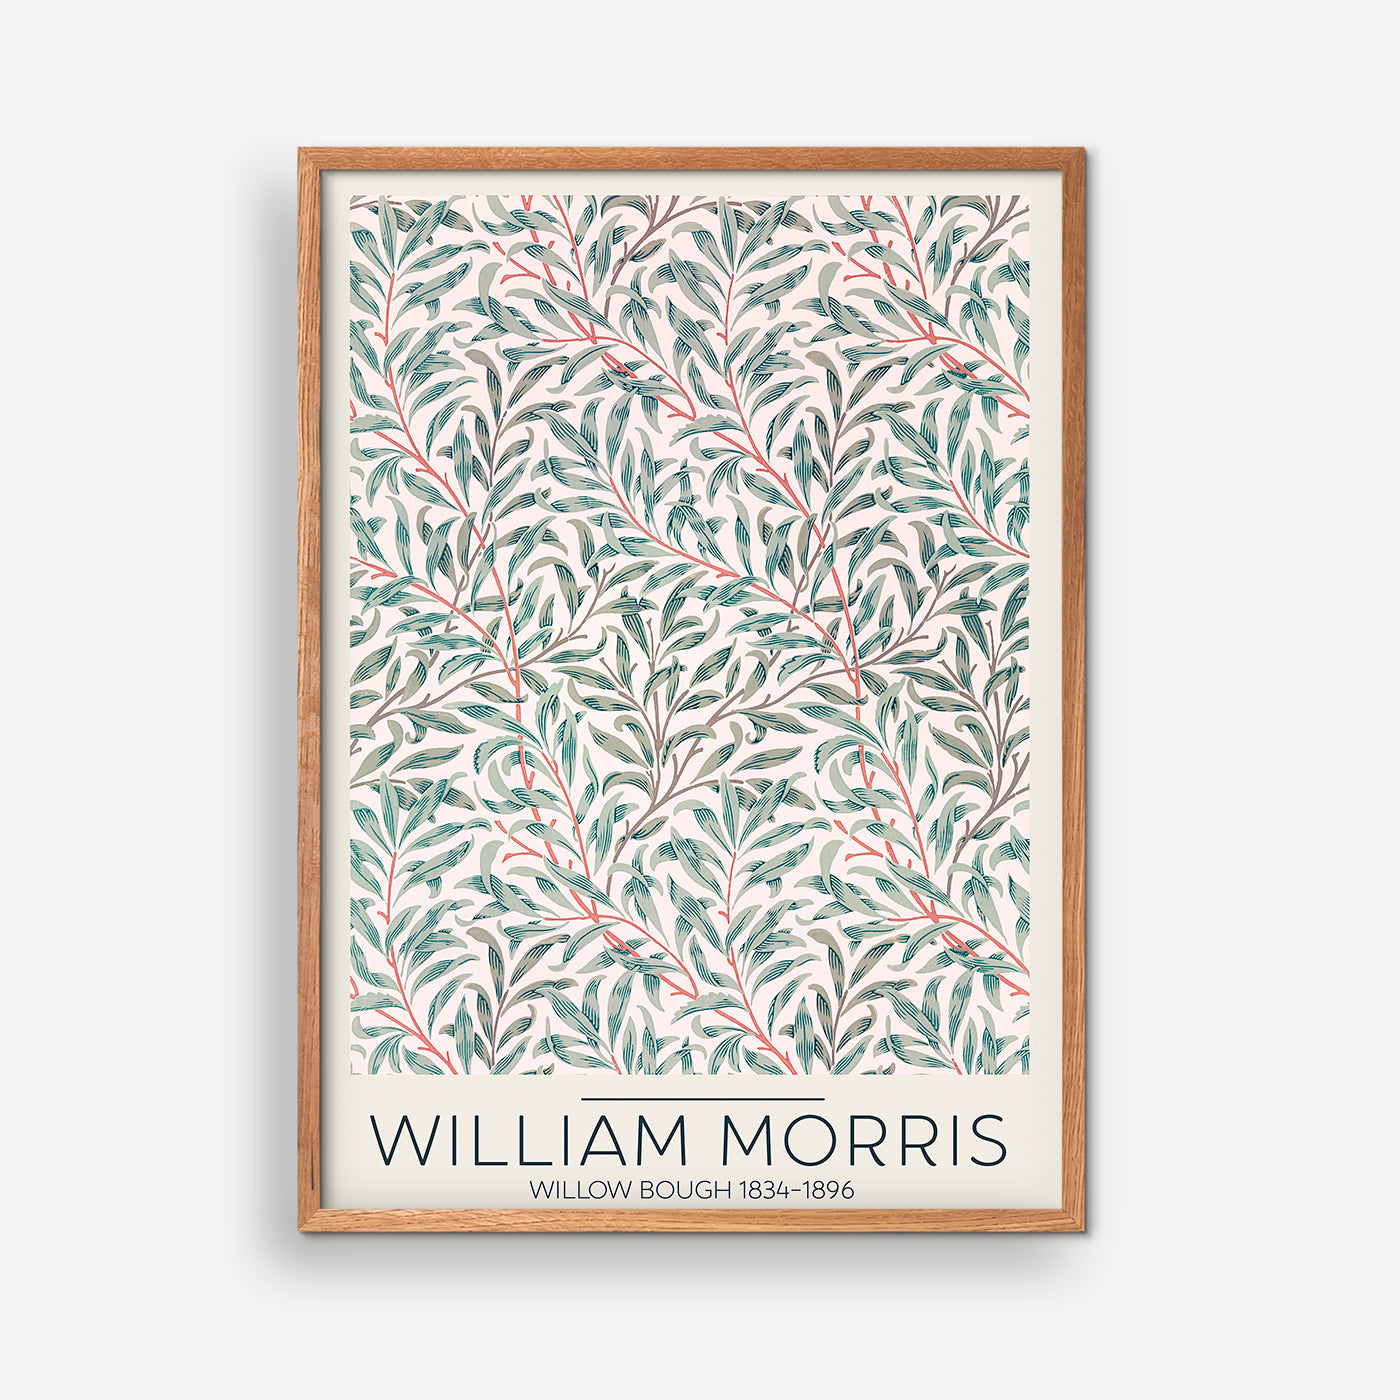 Willow Bough 1834 - William Morris